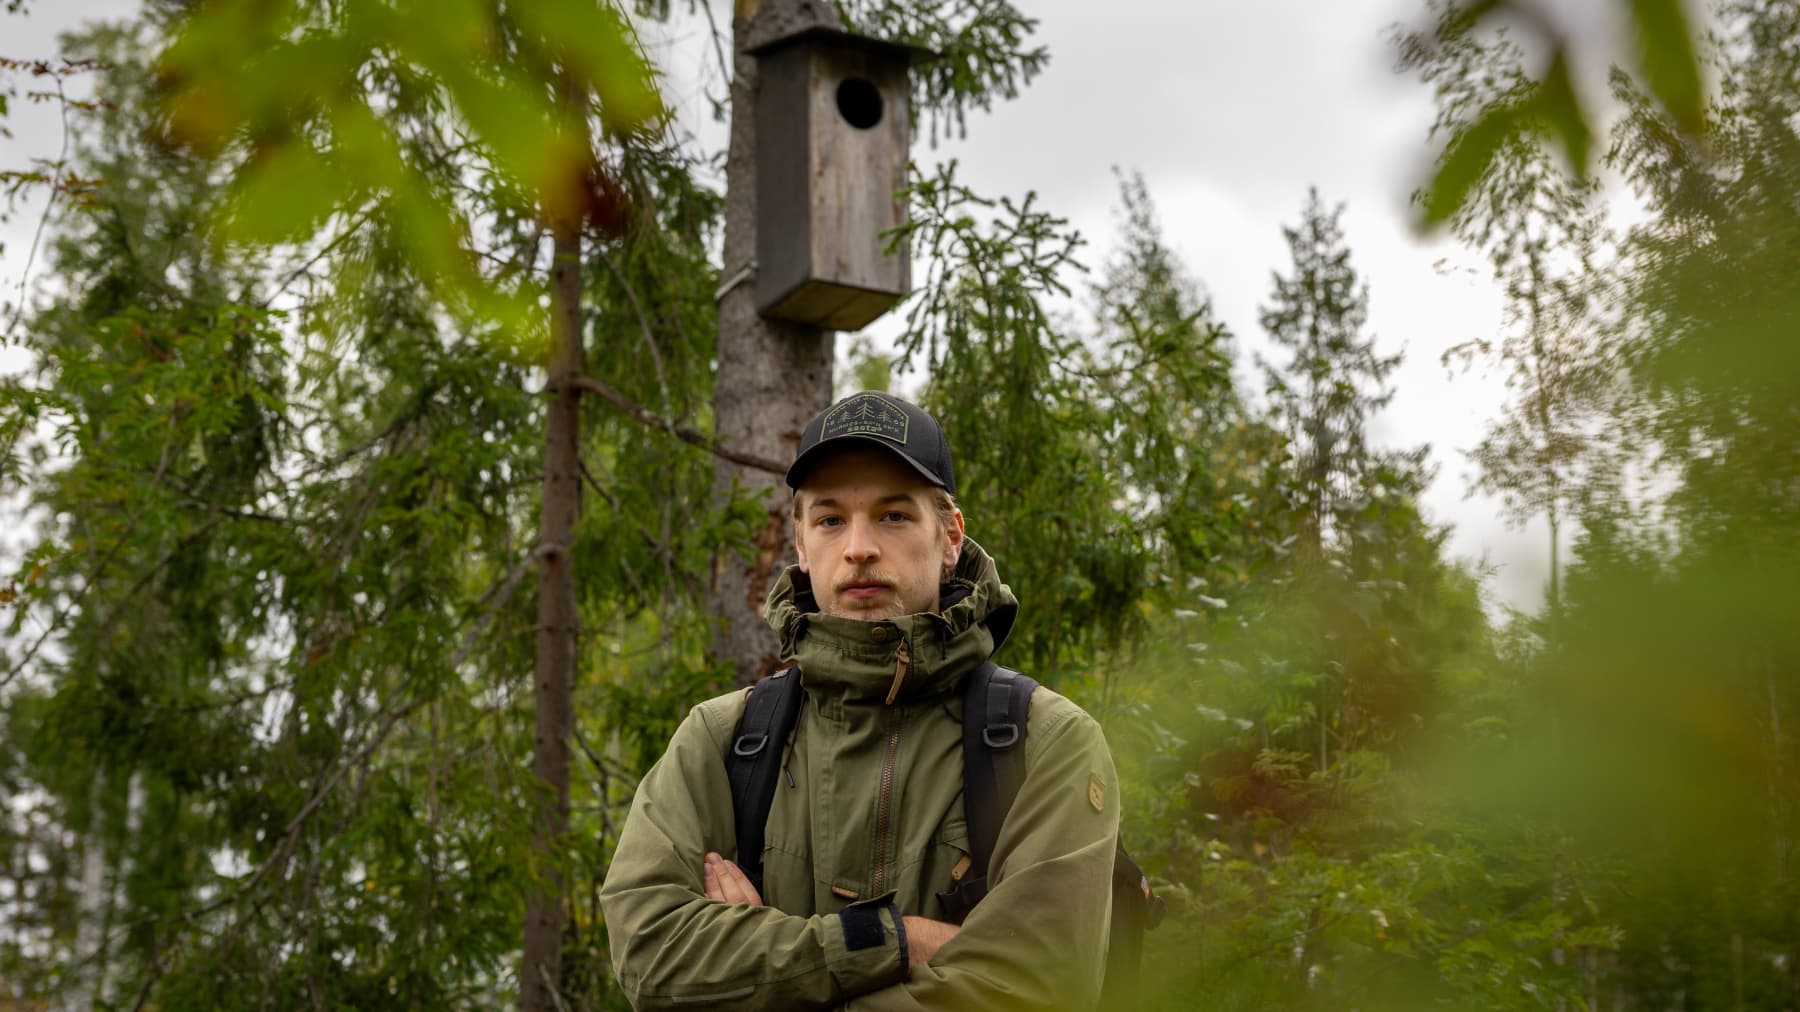 Luontokuvaaja Onni Rantanen. Taustalla lehtopöllön pönttö katkaistussa puussa.